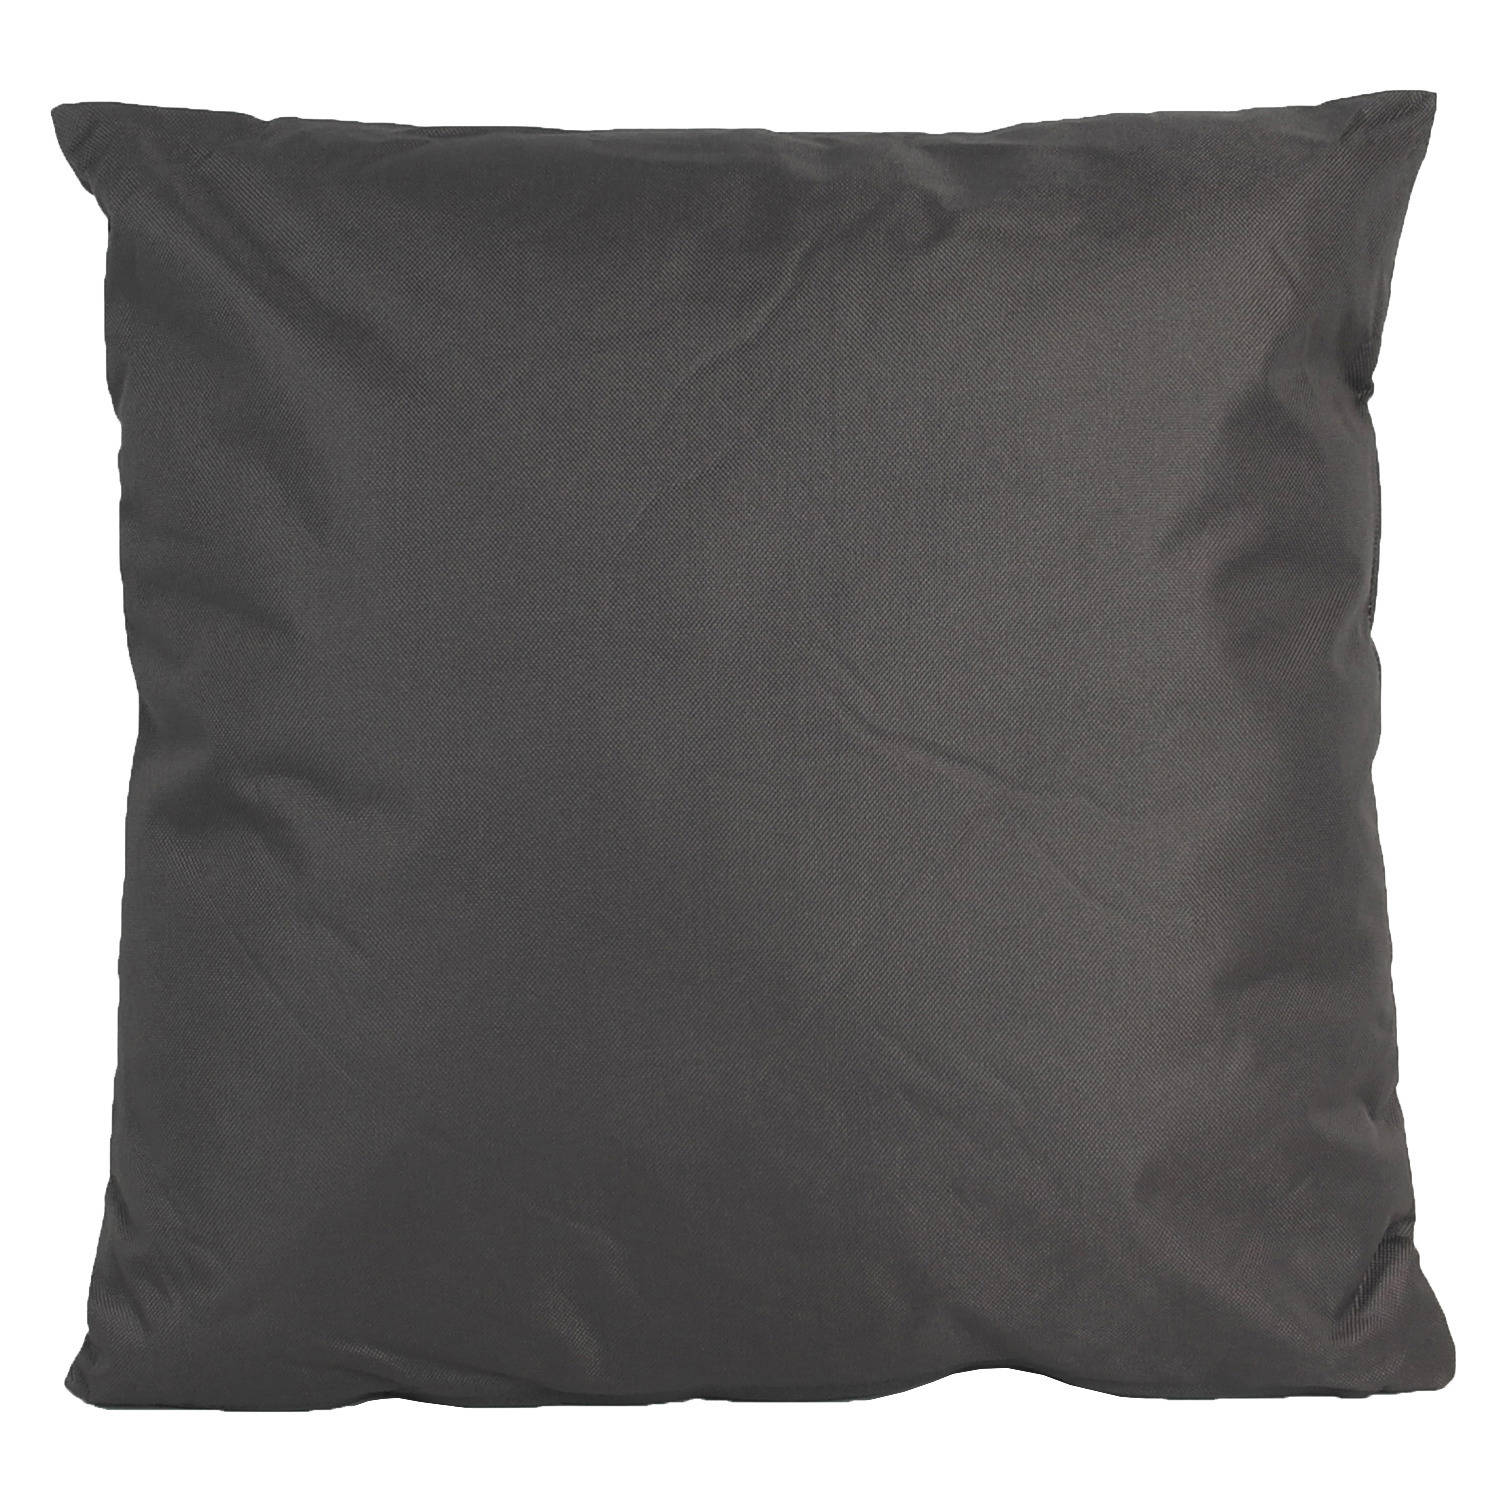 1x Grote bank/sier kussens voor binnen en buiten in de kleur antraciet grijs 60 x 60 cm - Sierkussens